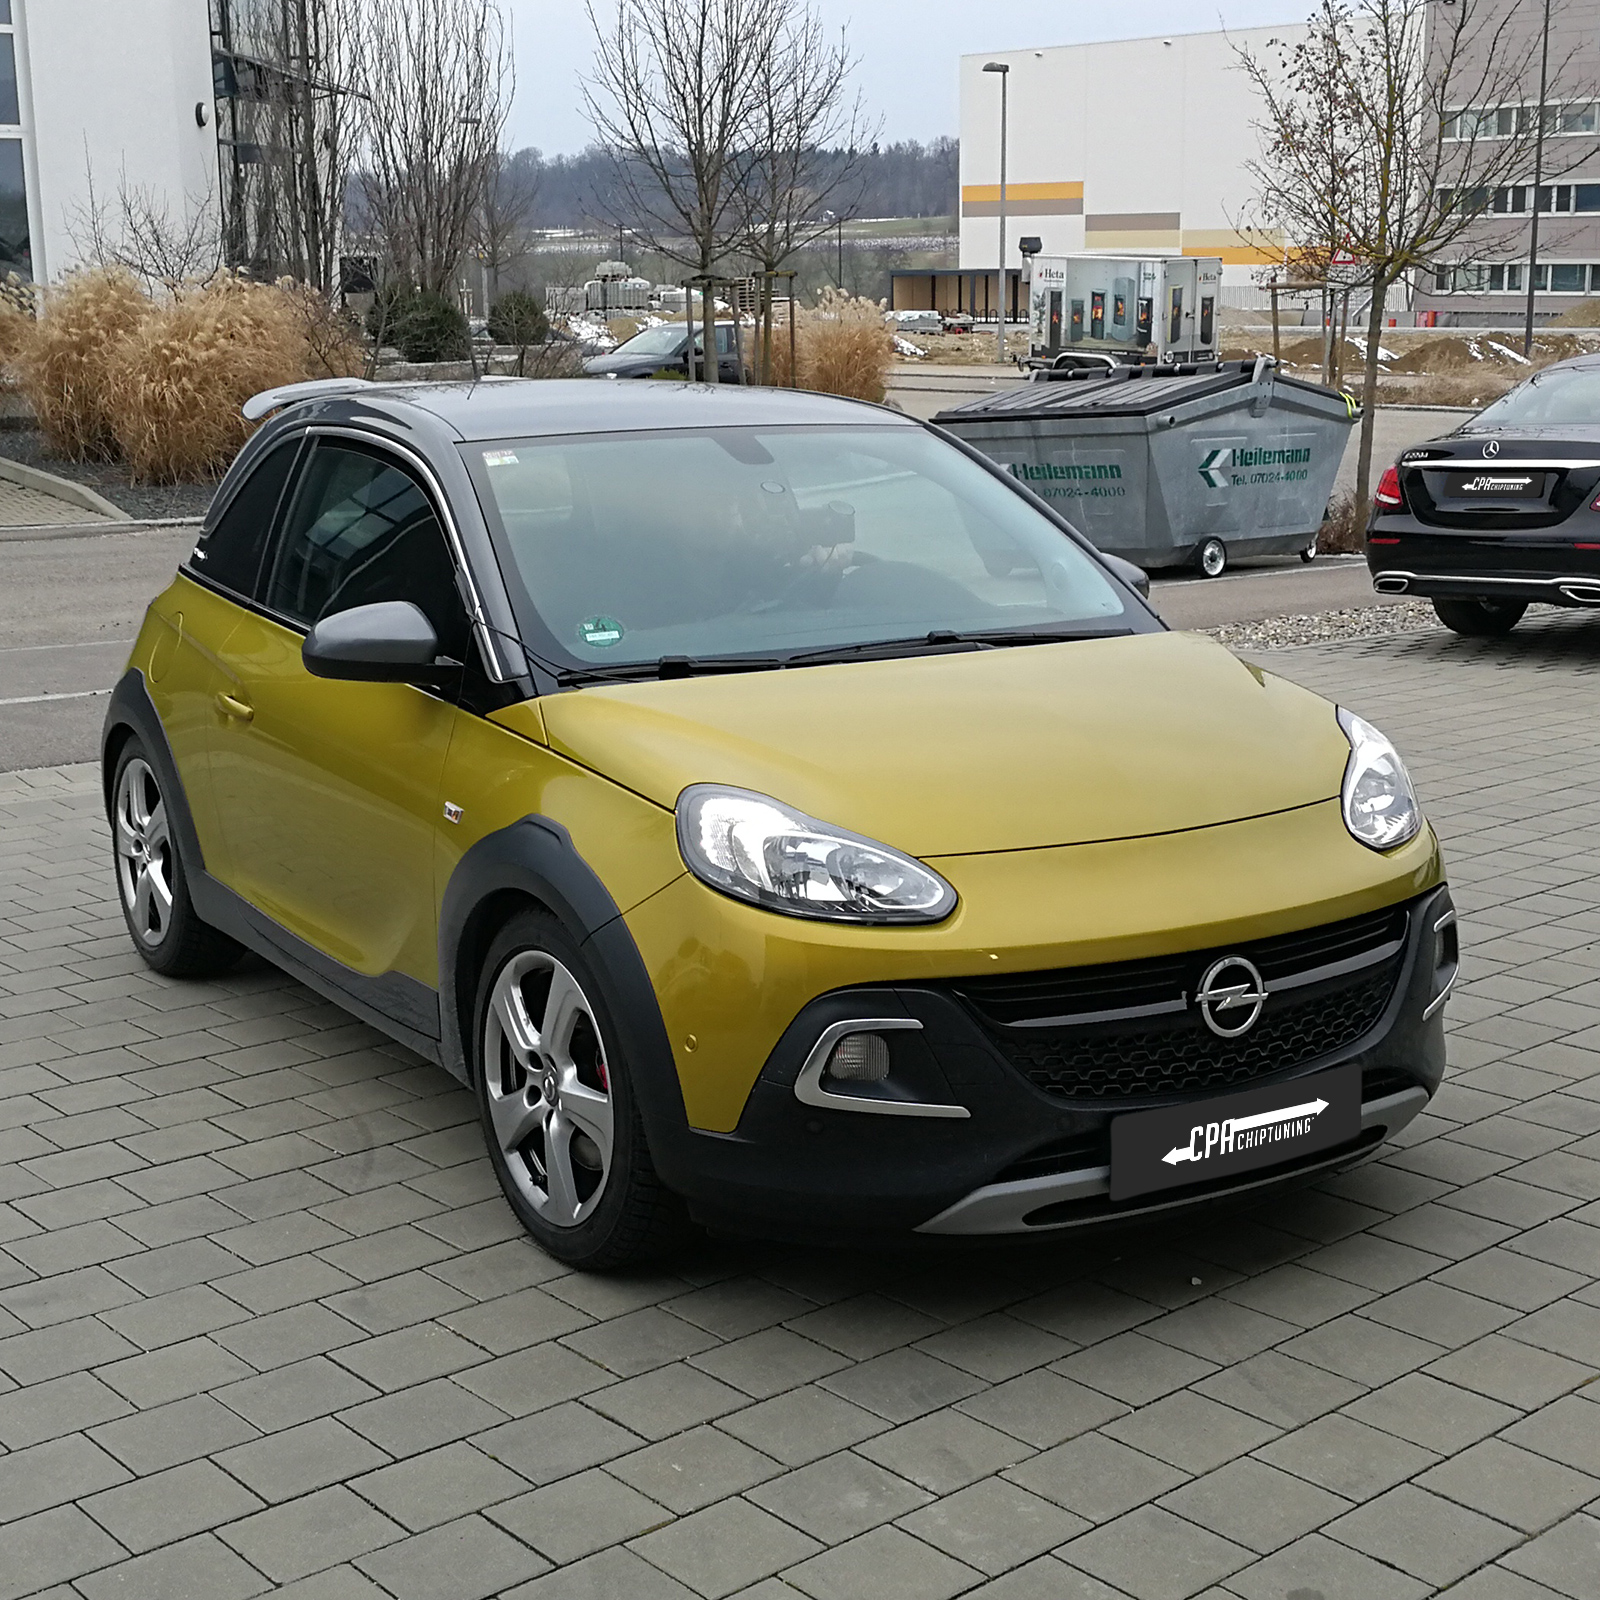 Malý Opel s vynikajícím výkonem